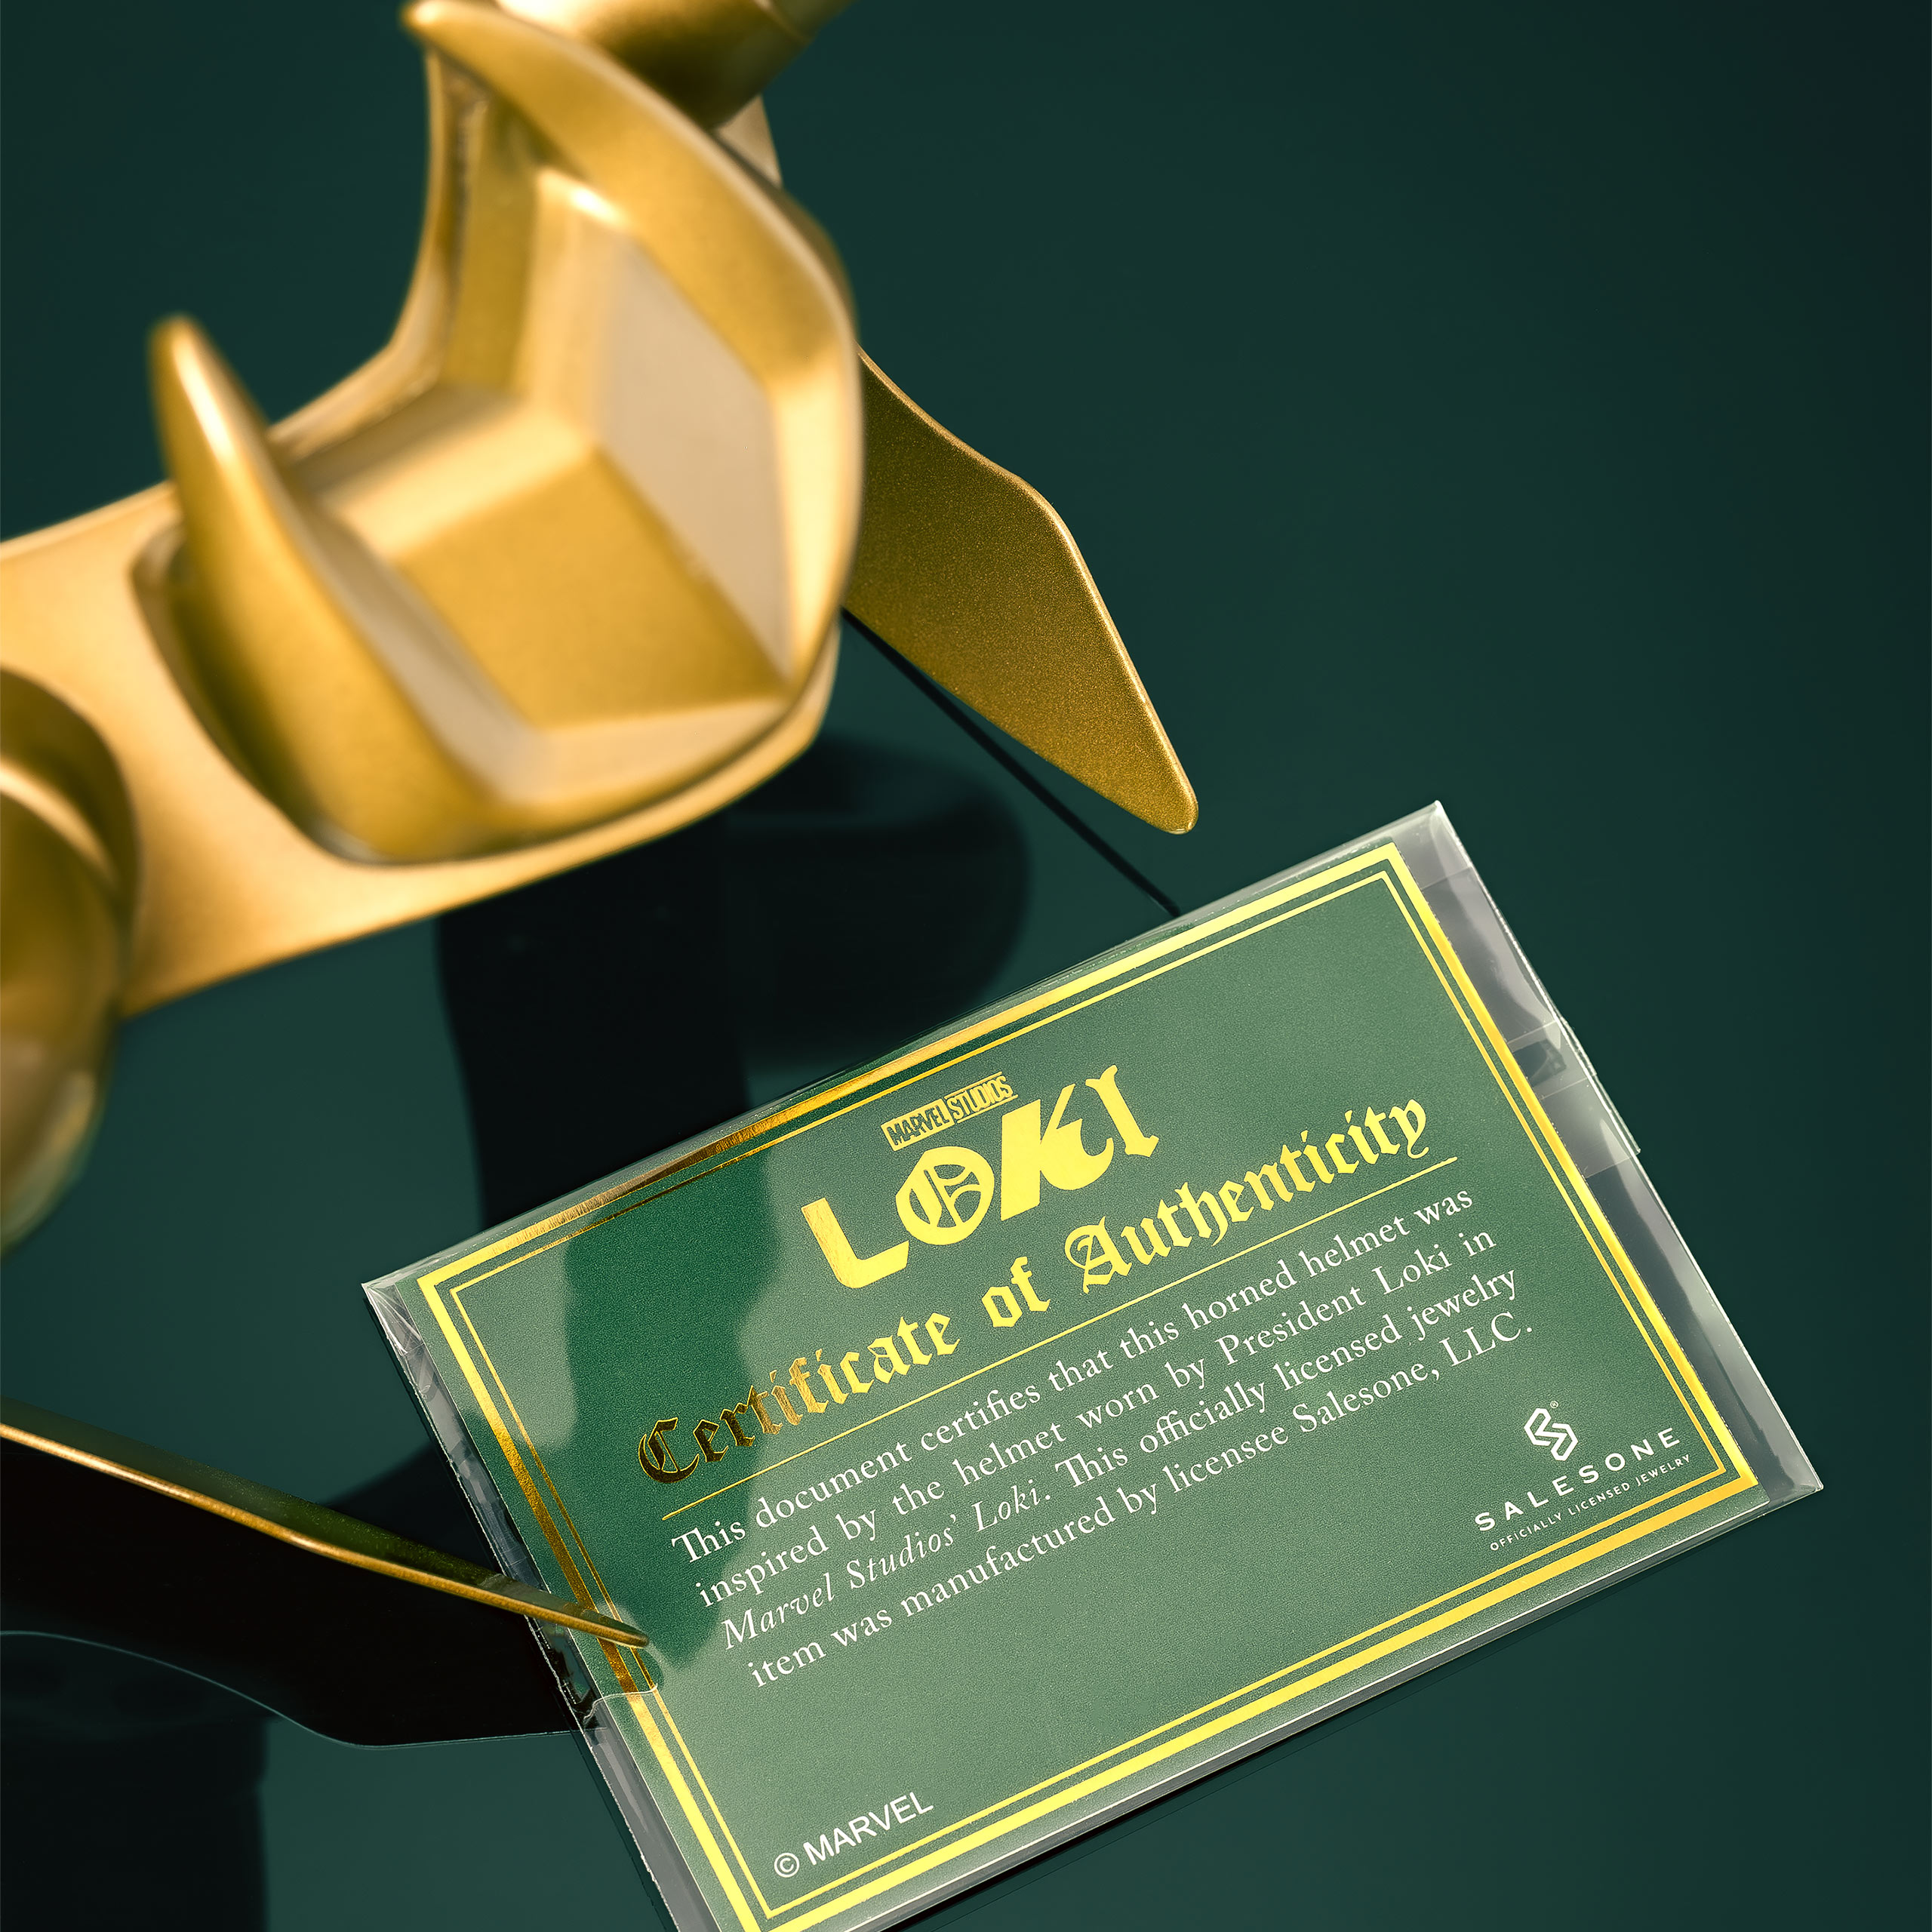 Loki - Master of Mischief Helmet Replica